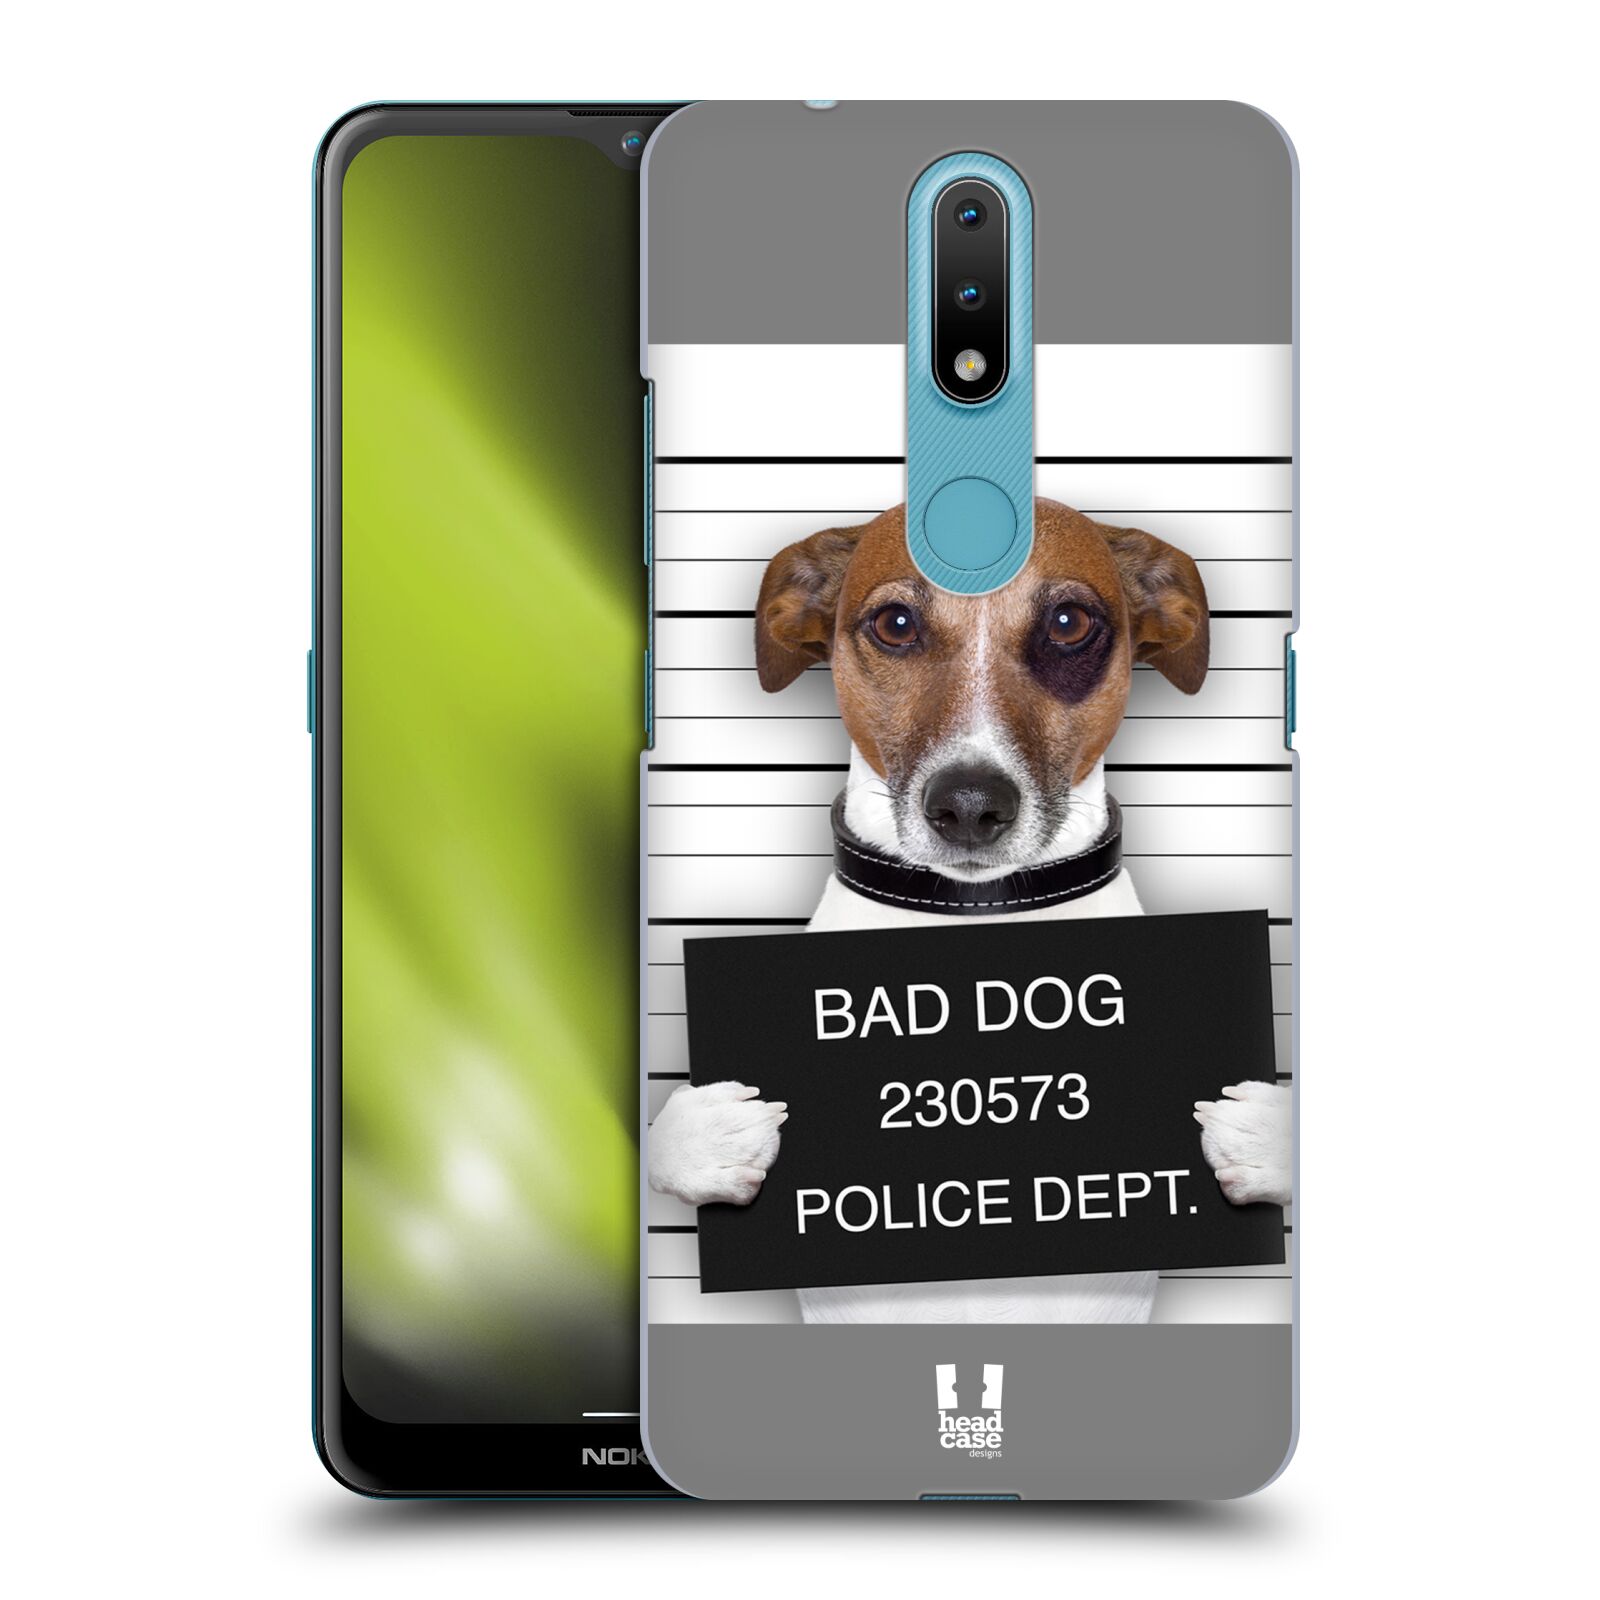 Plastový obal HEAD CASE na mobil Nokia 2.4 vzor Legrační zvířátka pejsek na policii